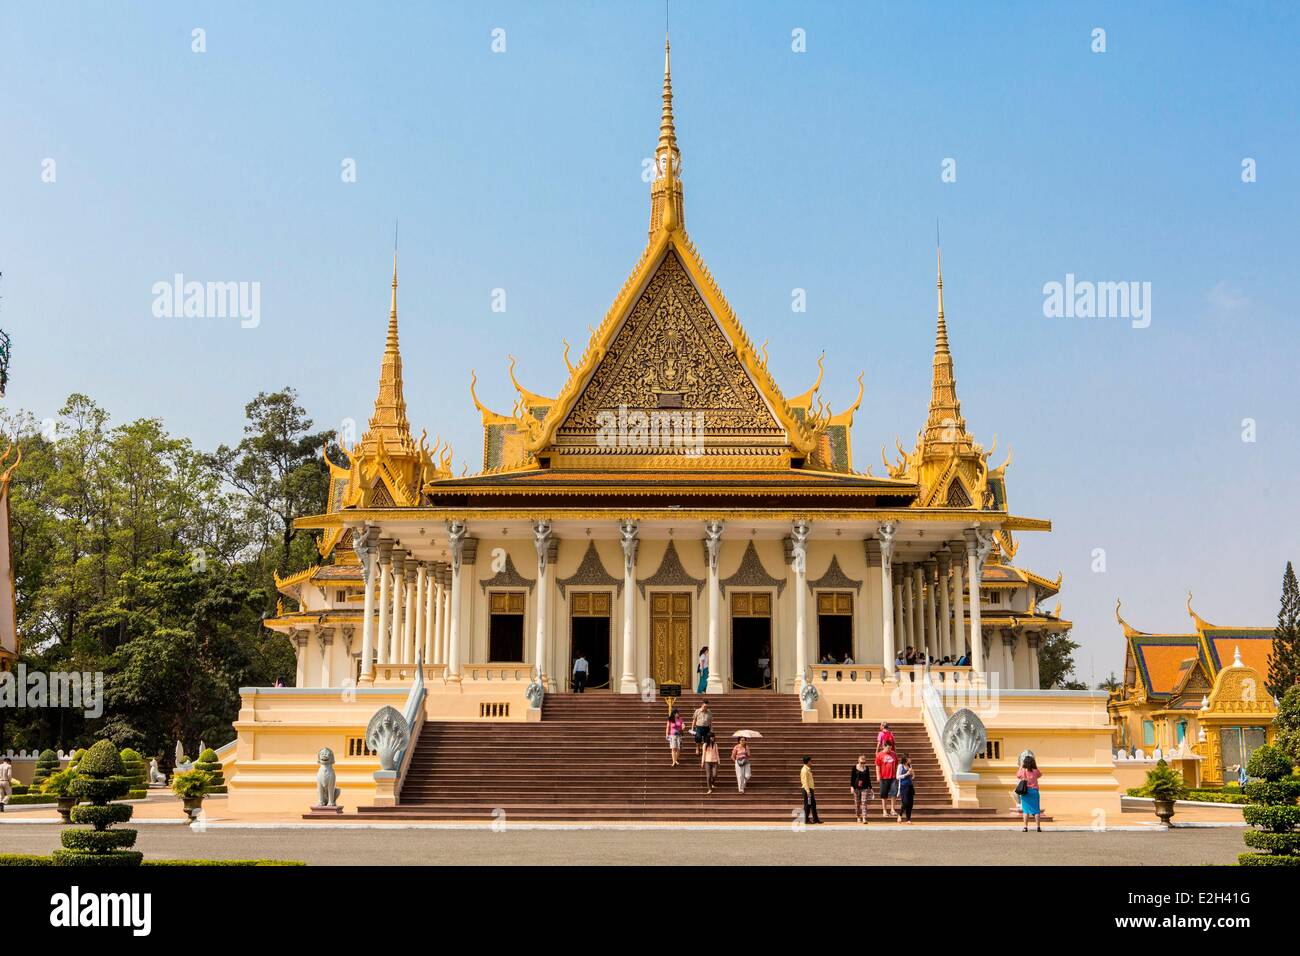 Cambodge Phnom Penh Palais Royal, Pagode d'argent (Wat Preah Keo en khmer) construit par le Roi Norodom en 1892 à 1902 est sanctuaire de cendres royale et son sol est recouvert de carreaux d'argent 5329 1,125 k chaque Banque D'Images